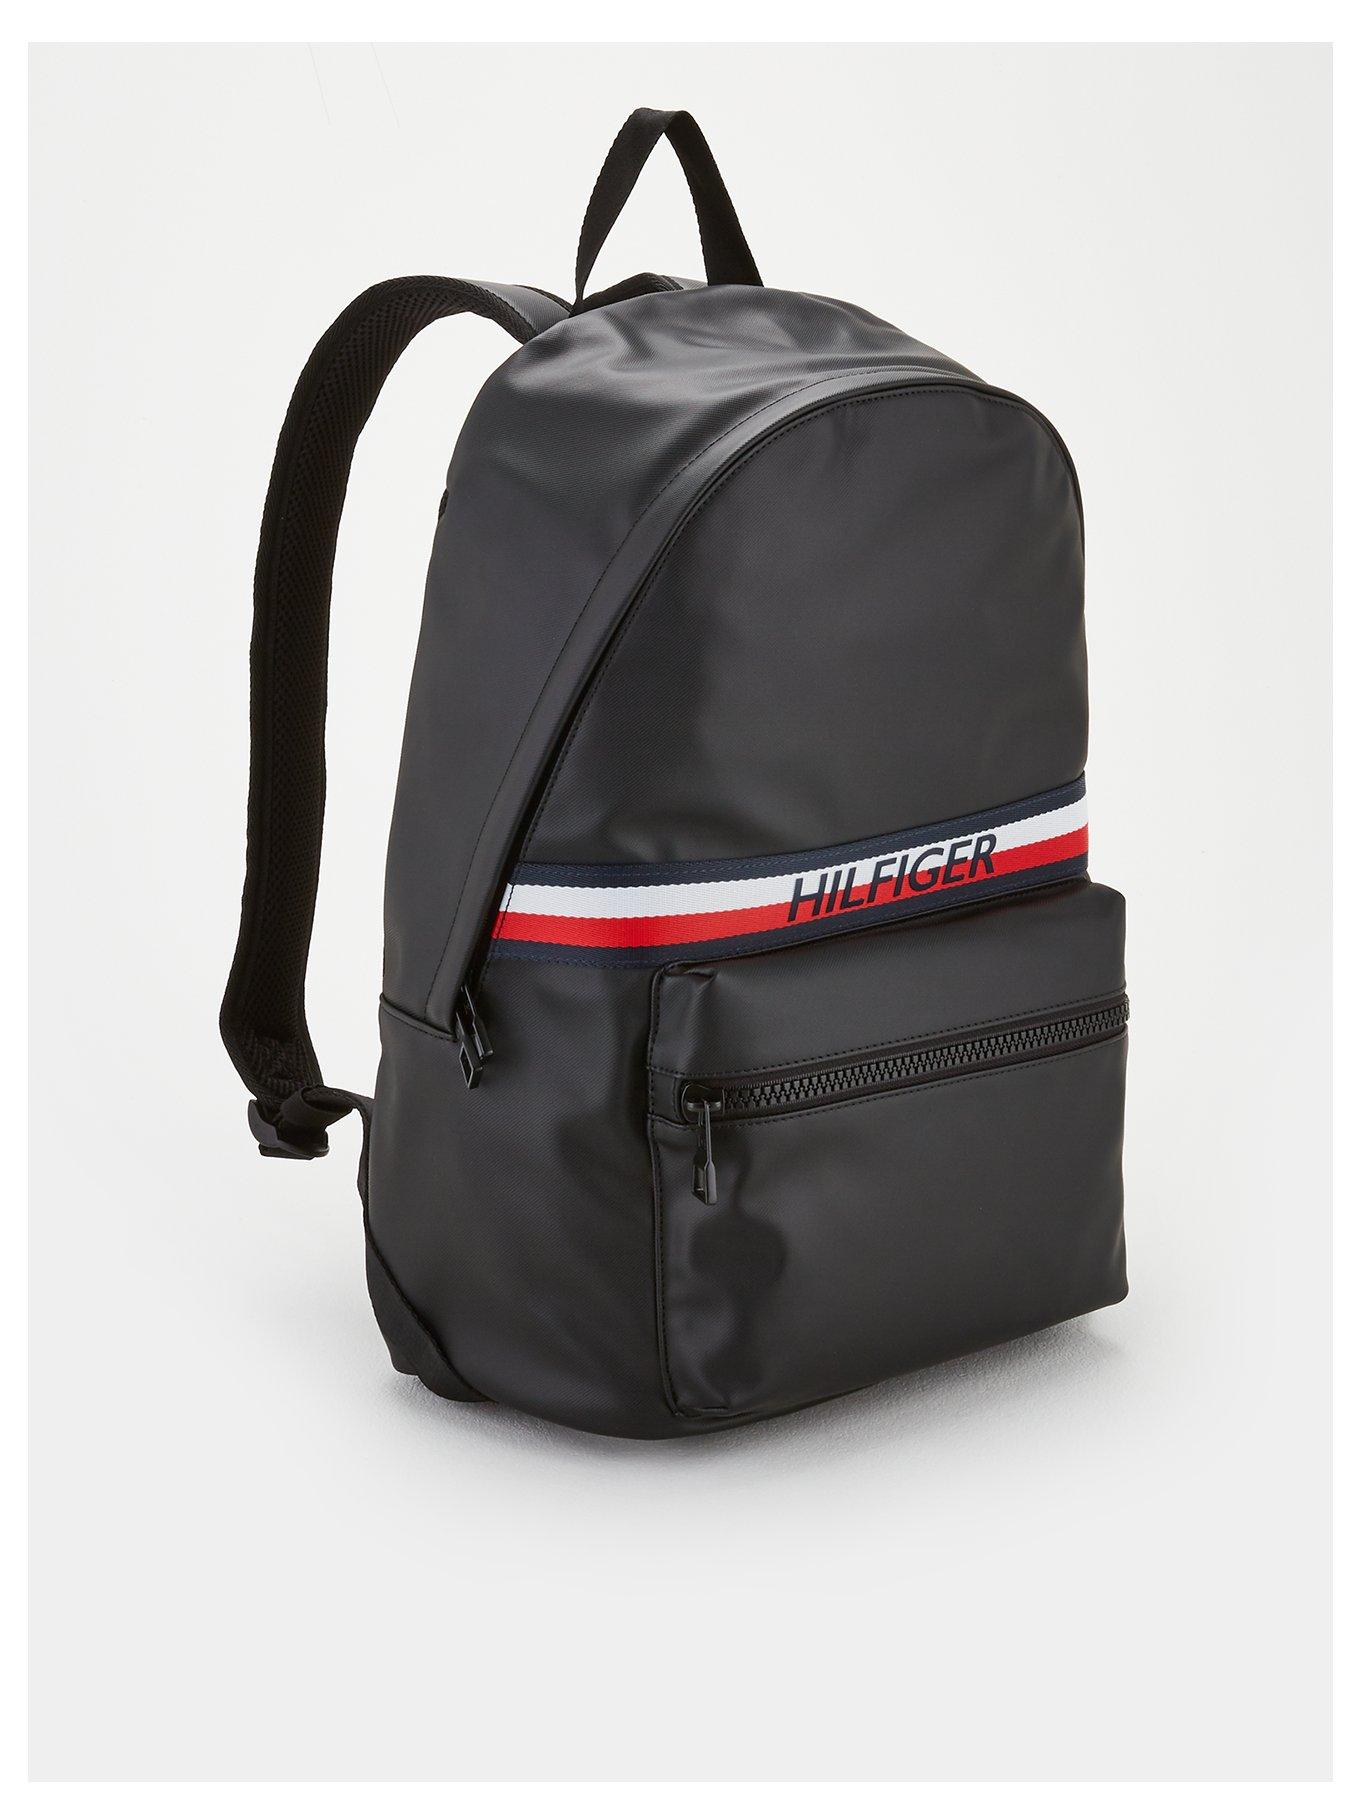 tommy hilfiger easy stripe backpack